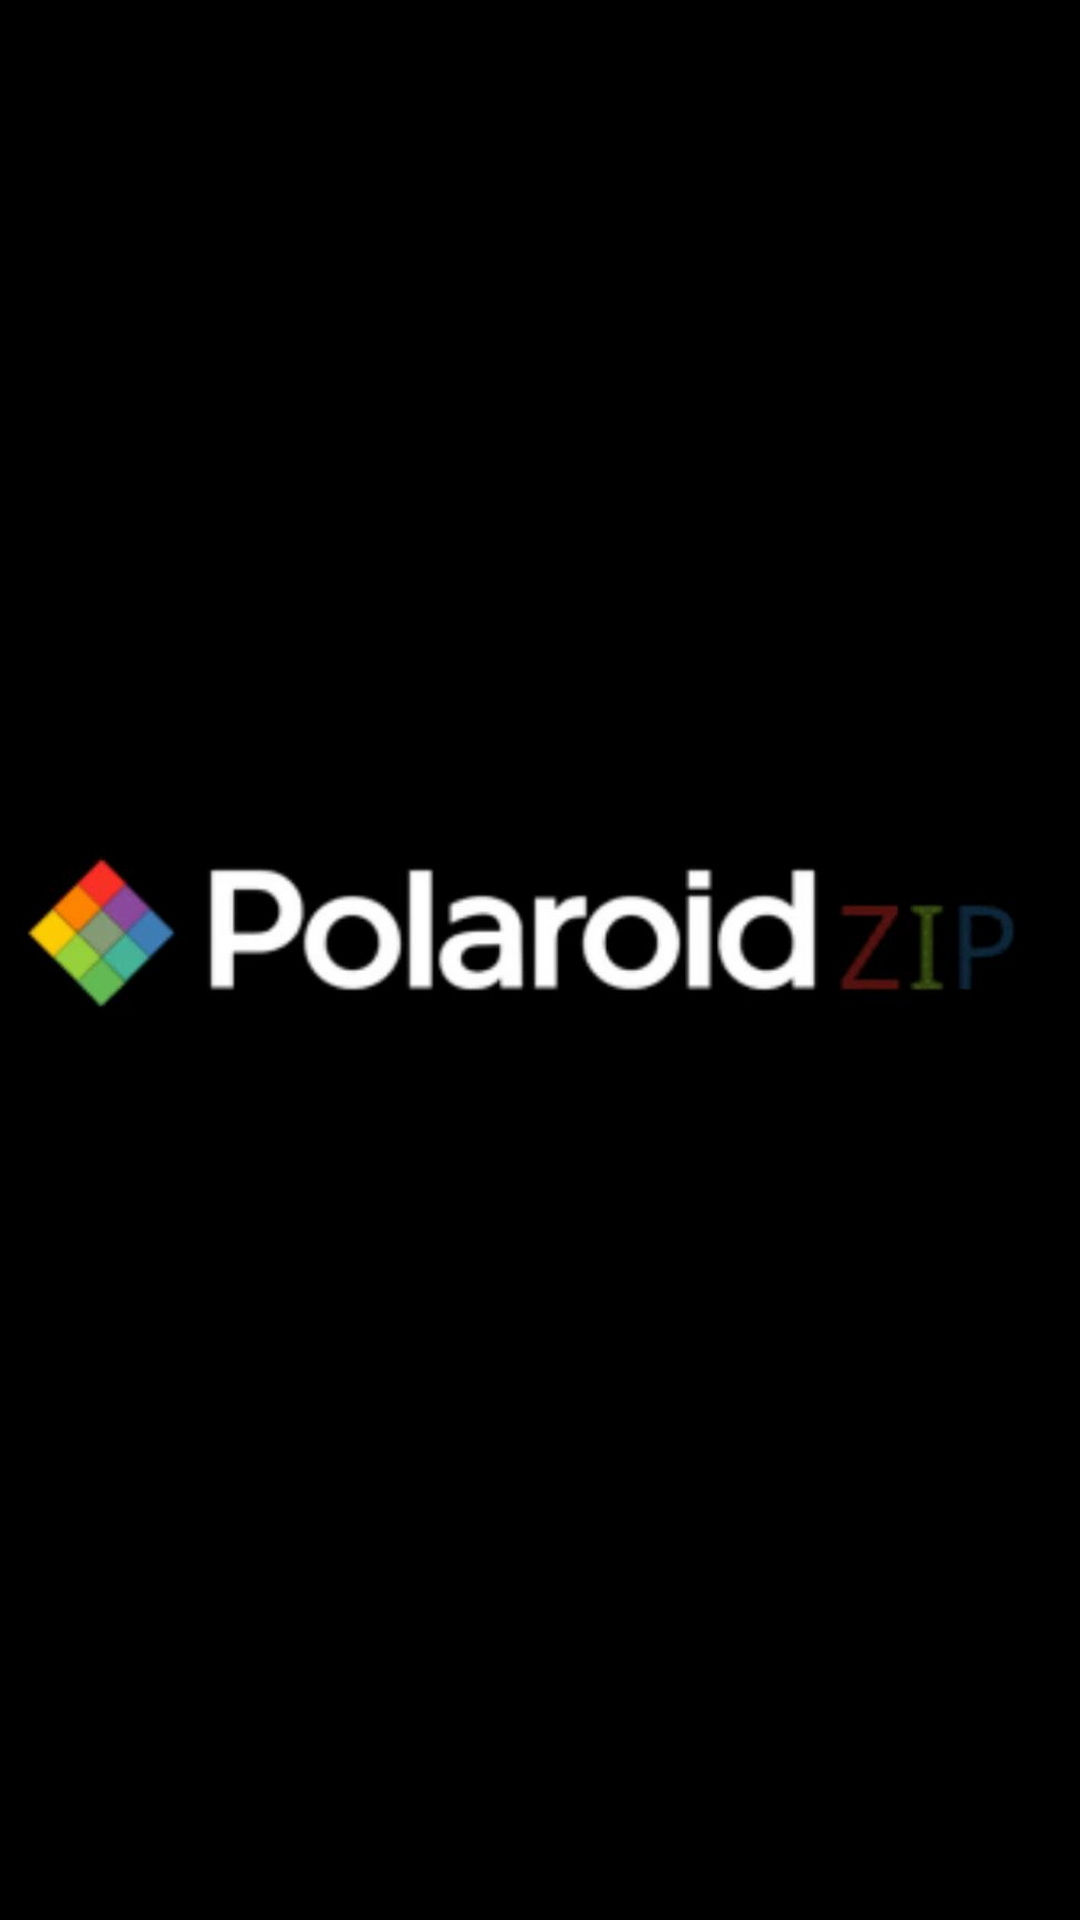 PolaroidZIP